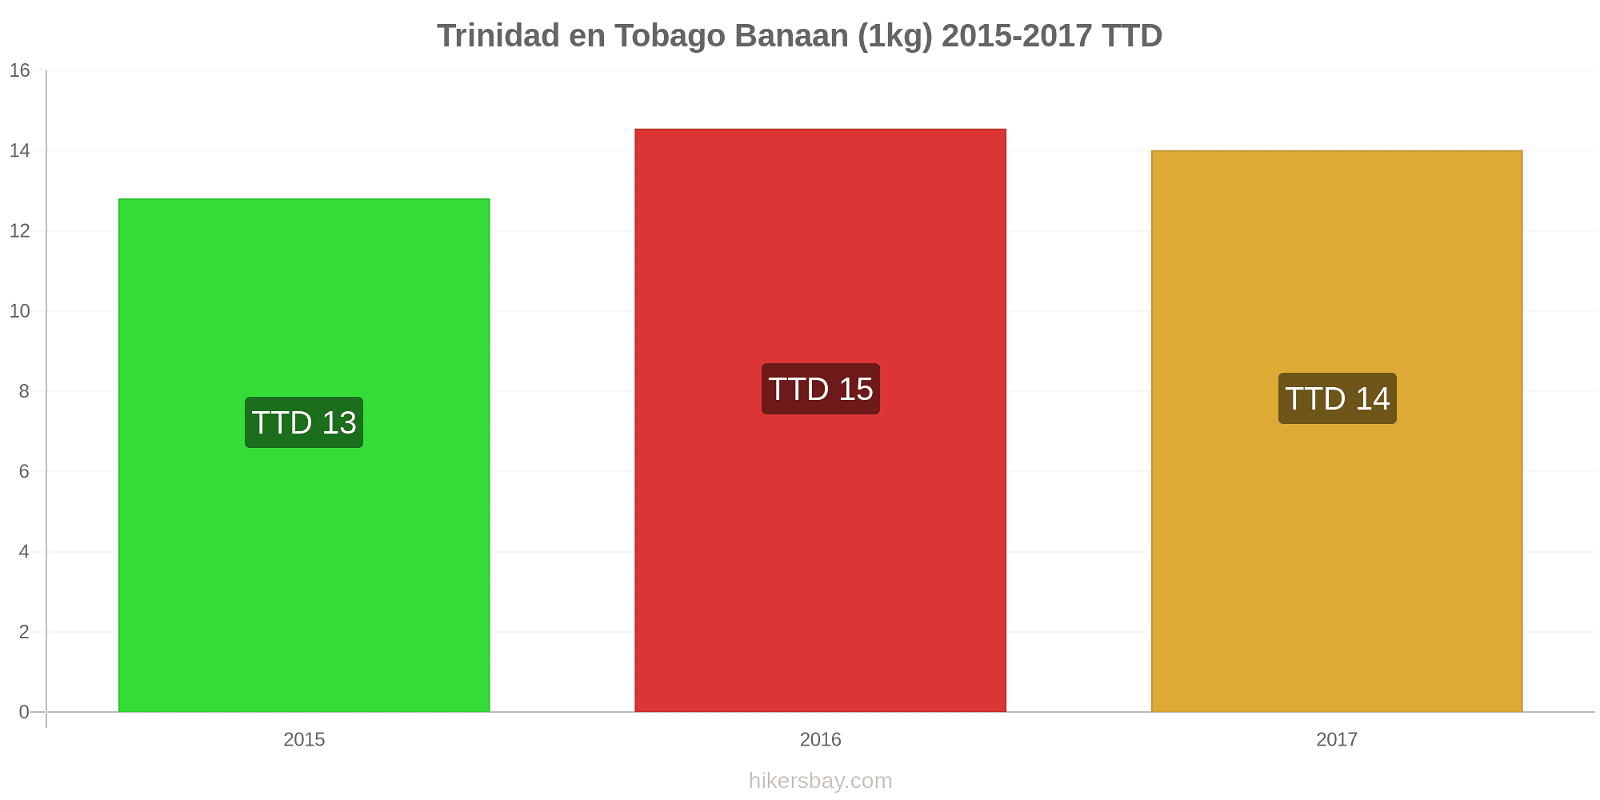 Trinidad en Tobago prijswijzigingen Bananen (1kg) hikersbay.com